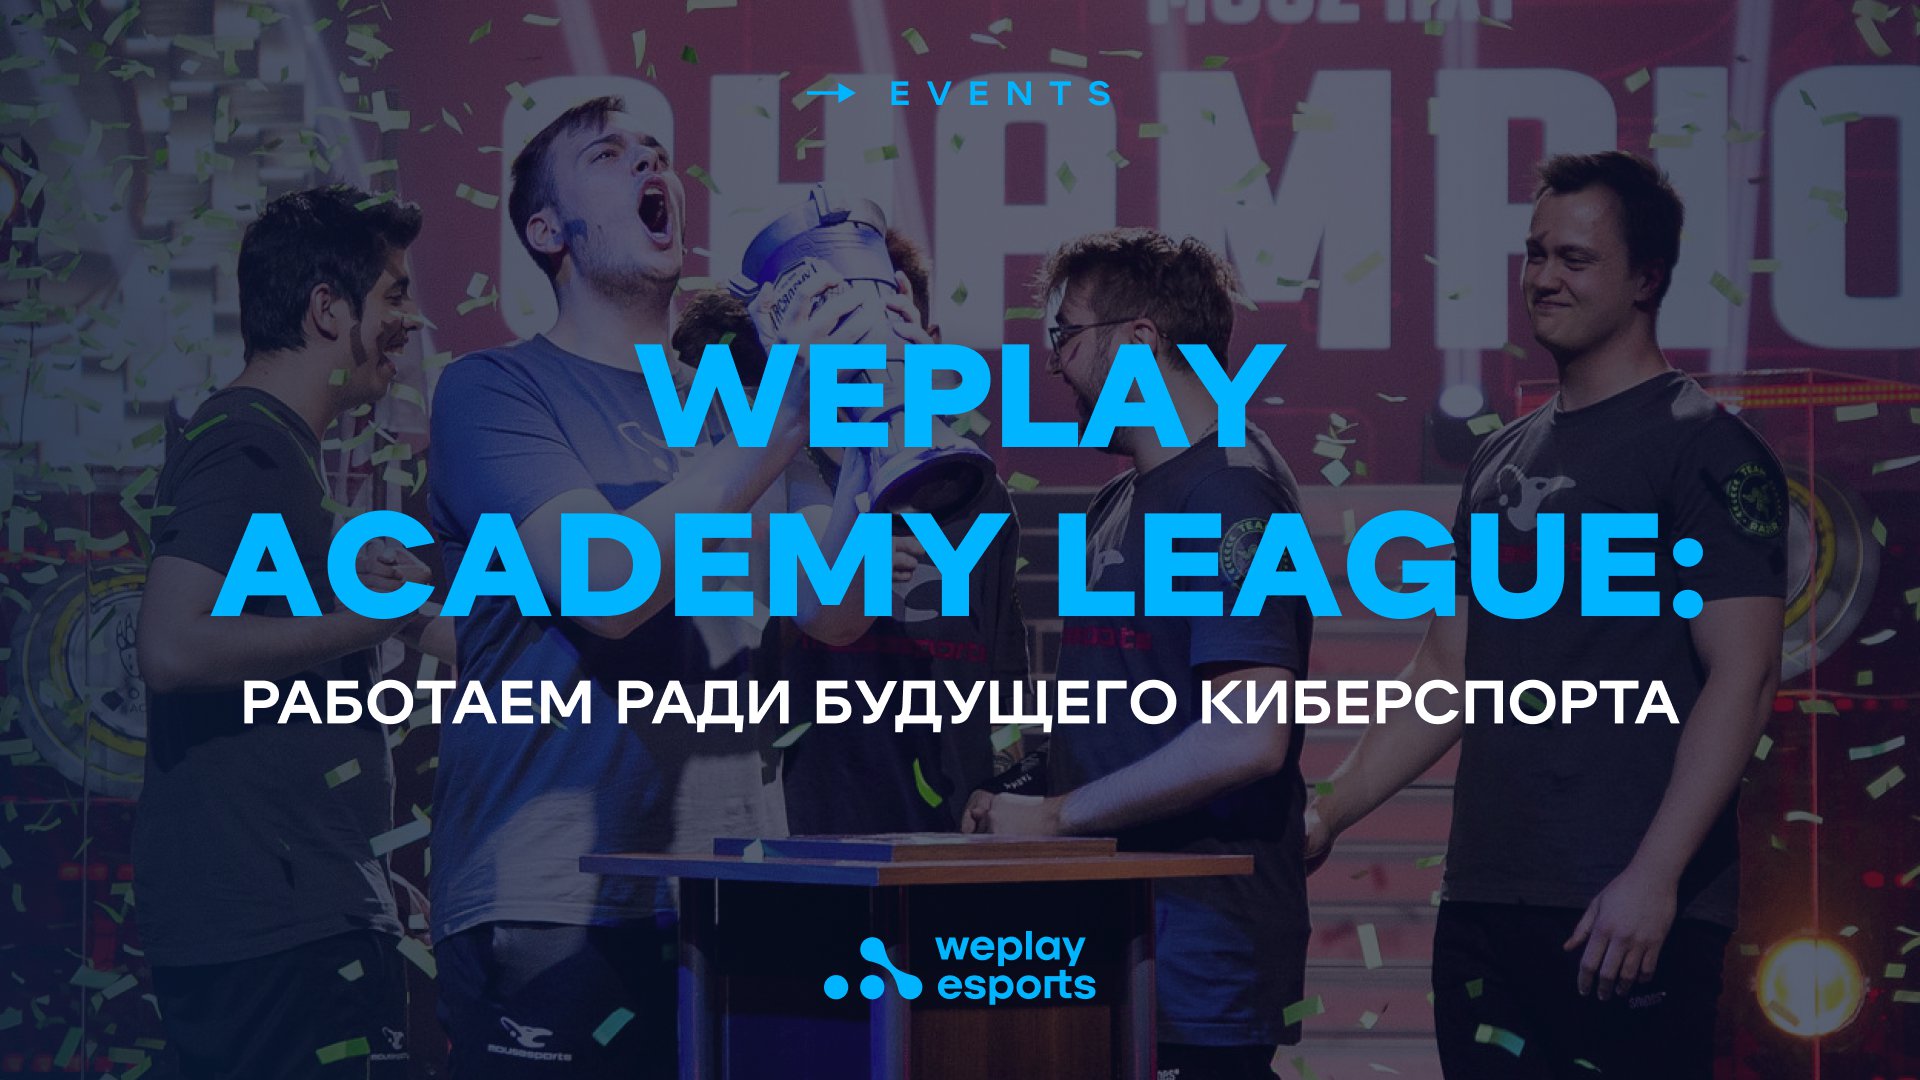 WePlay Academy League: работаем ради будущего киберспорта. Изображение: WePlay Holding